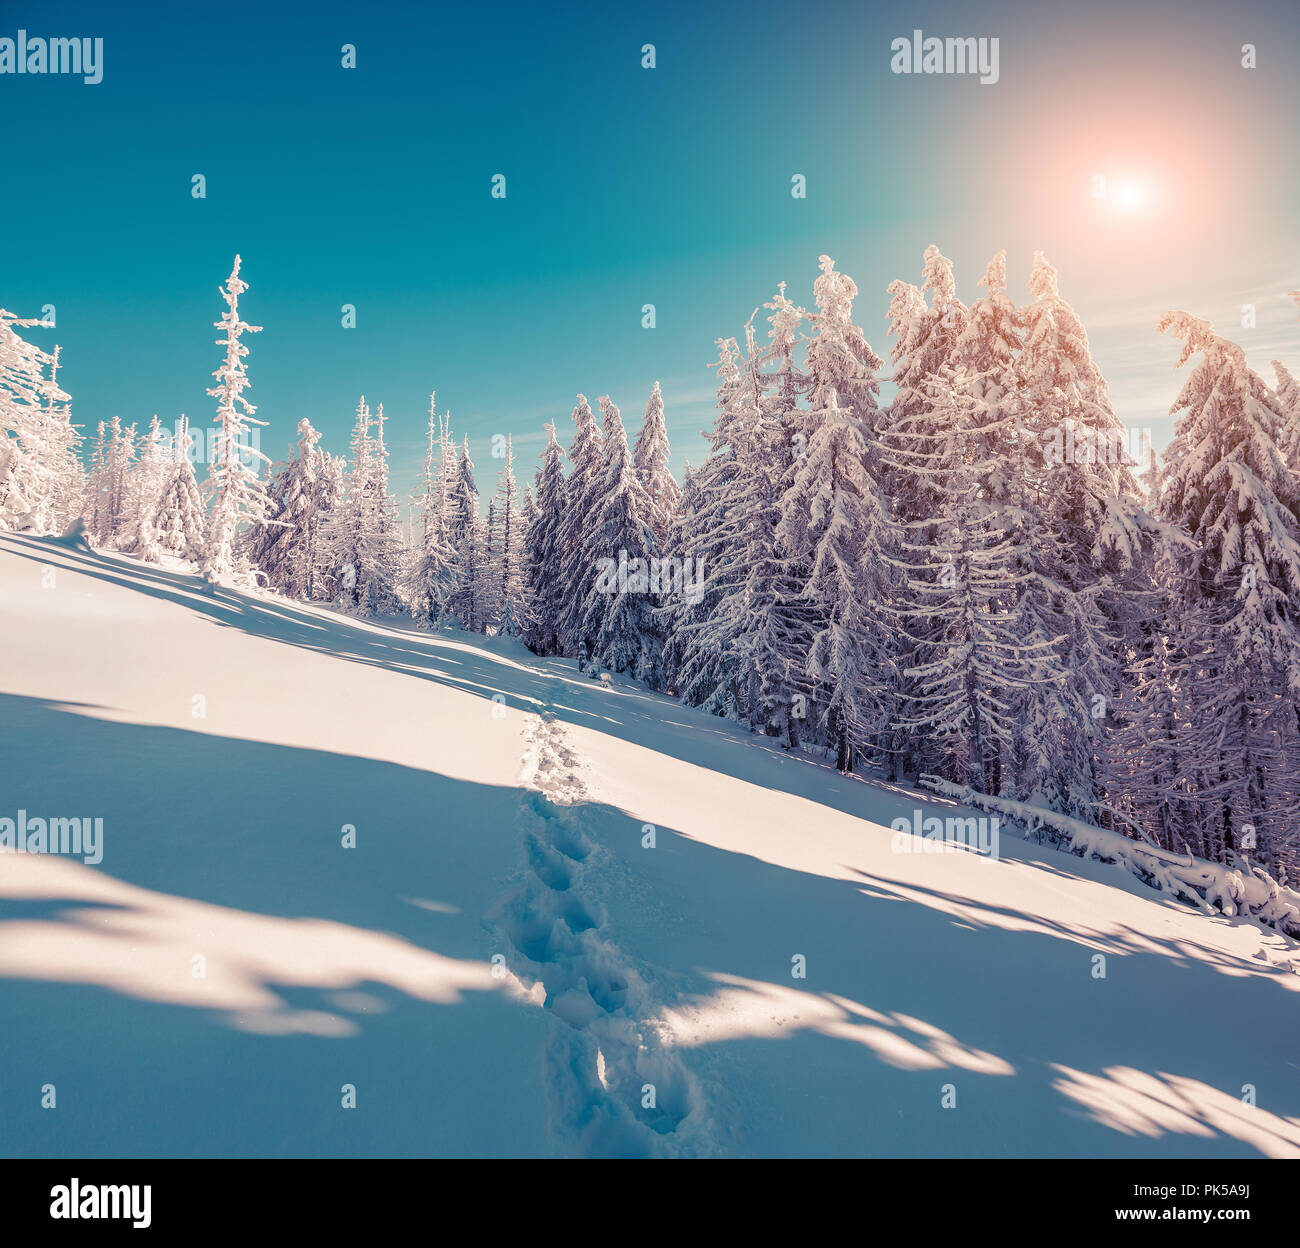 Sunny scena invernale in montagna con foreste di abeti coperti di neve fresca. Instagram tonificante. Foto Stock